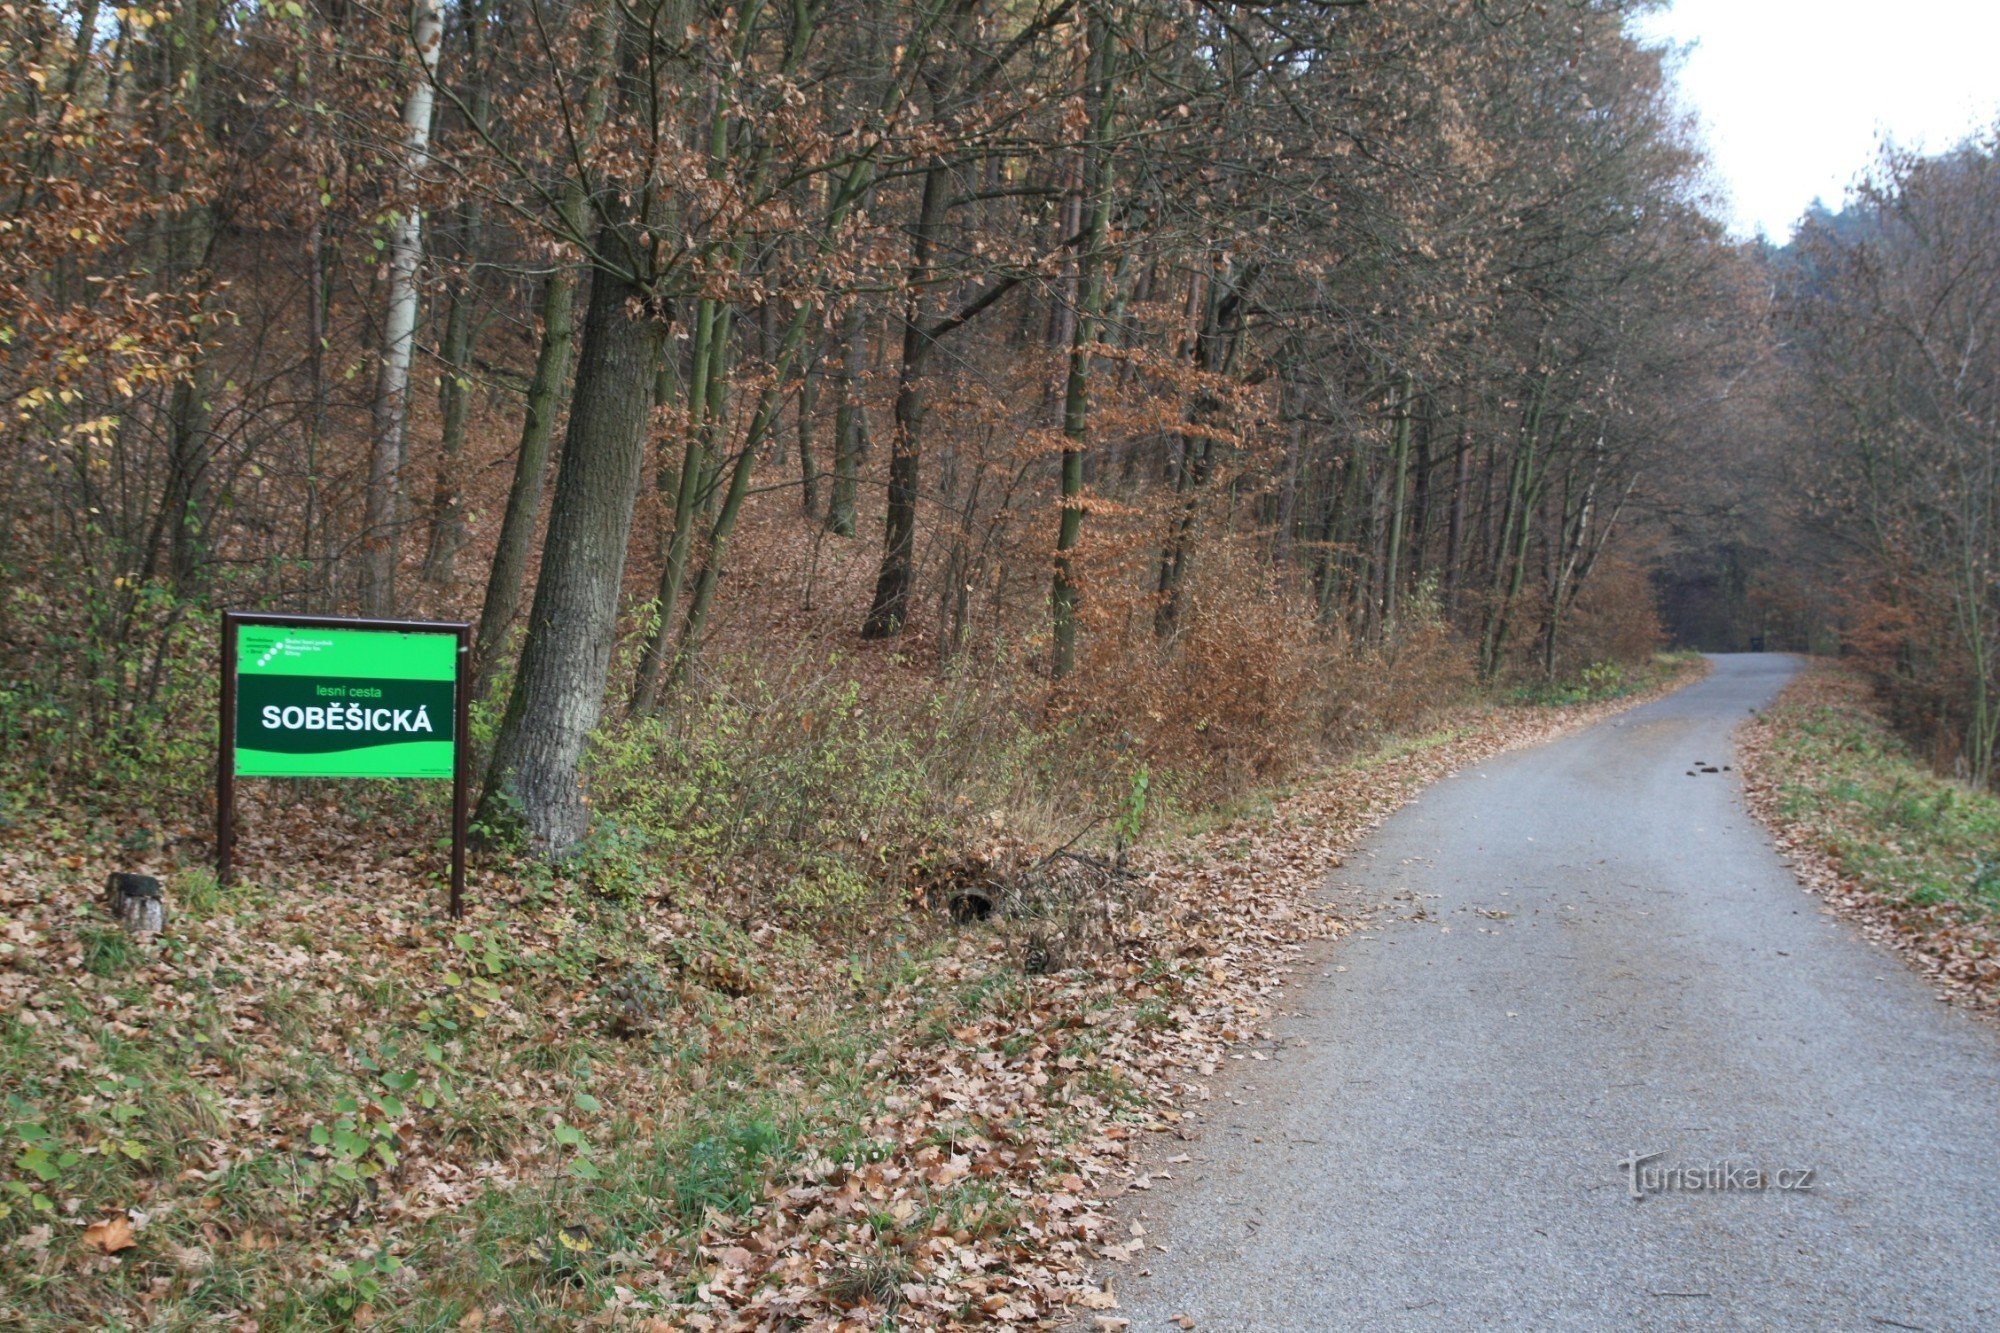 Soběšická cesta bắt đầu ở cuối làng đầu rừng